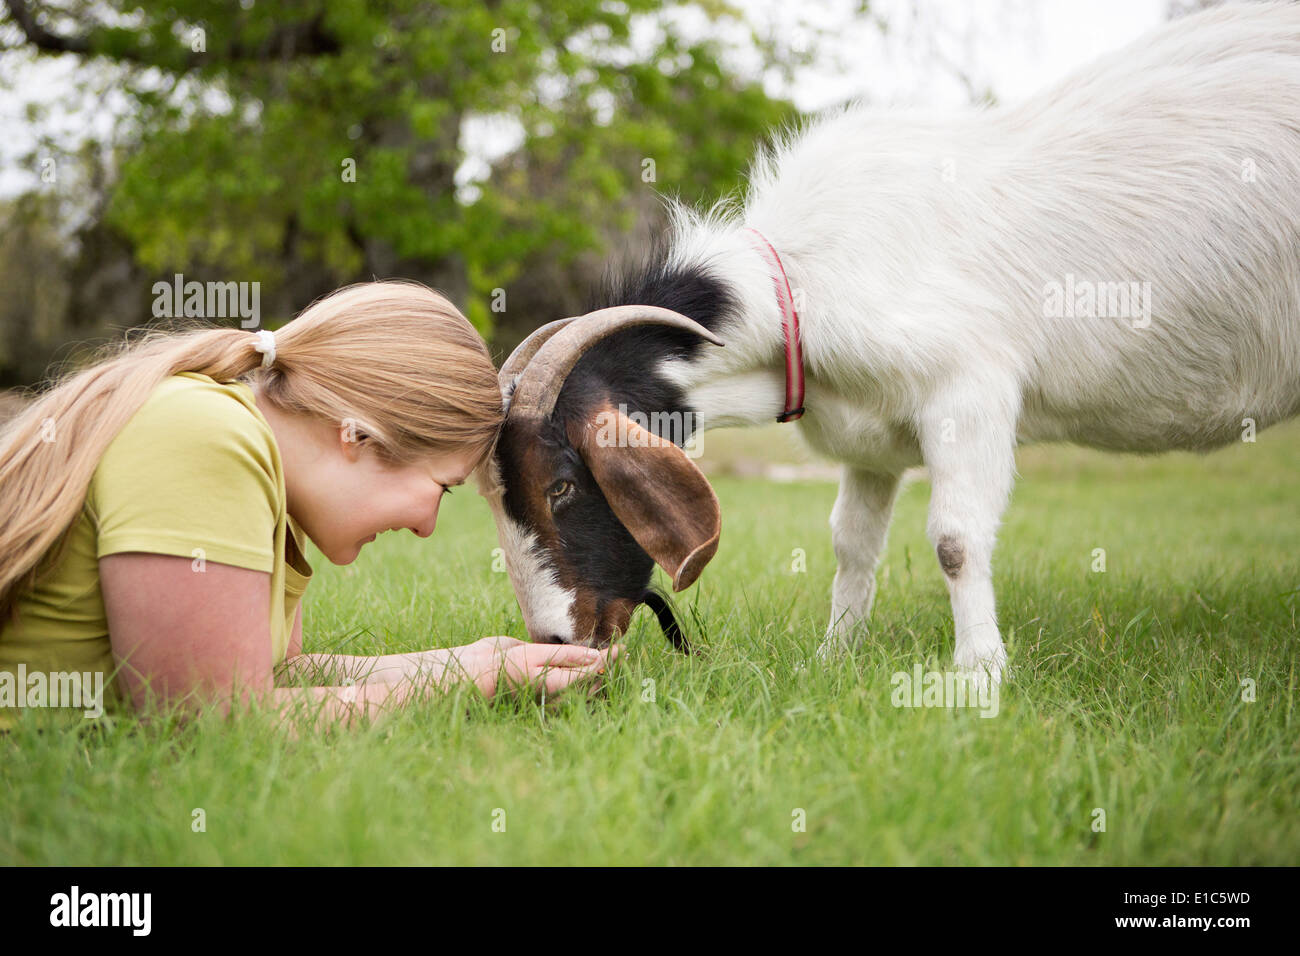 Ein Mädchen mit einer Ziege auf dem Rasen Kopf an Kopf liegen. Stockfoto